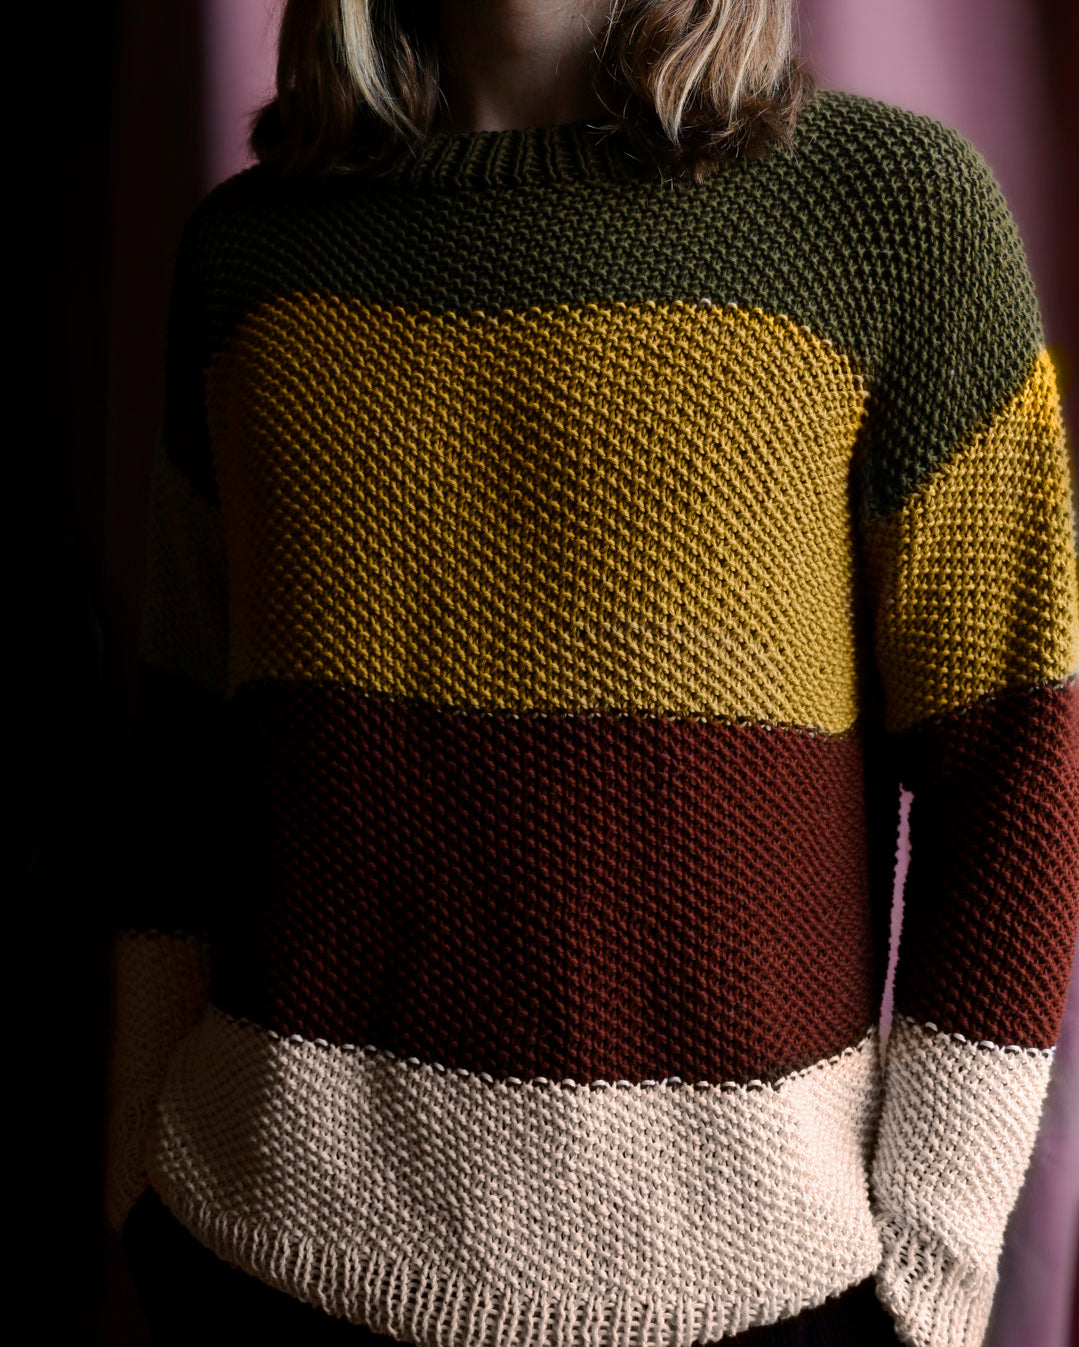 Leopard Sweater Kit – weareknitters